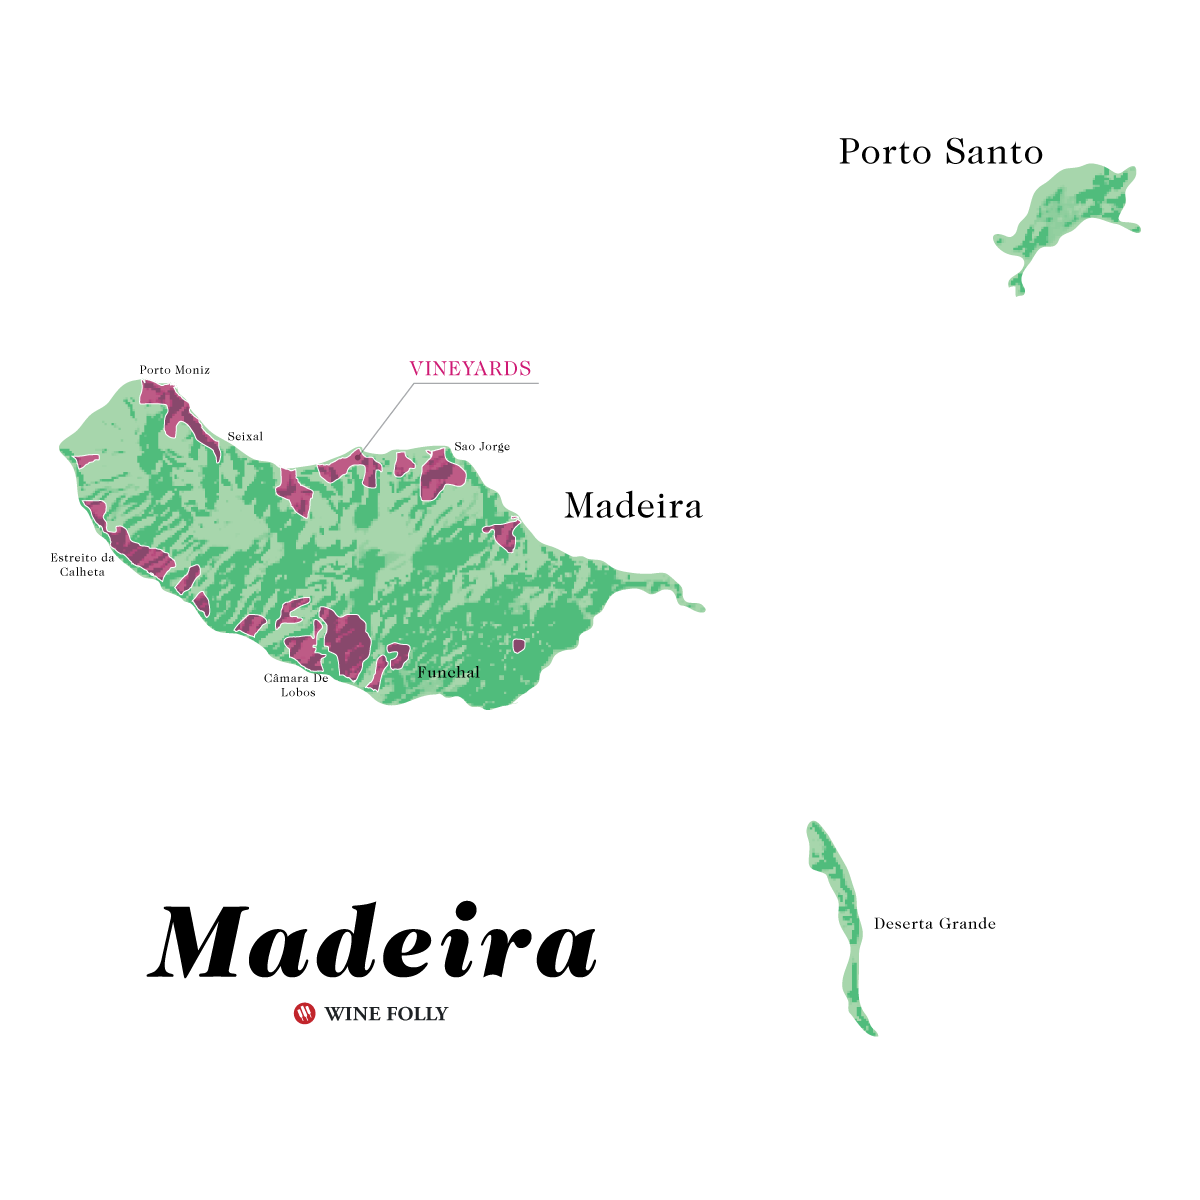 Mapa ng alak ng Madeira Wine Portugal - ni Wine Folly - copyright 2019